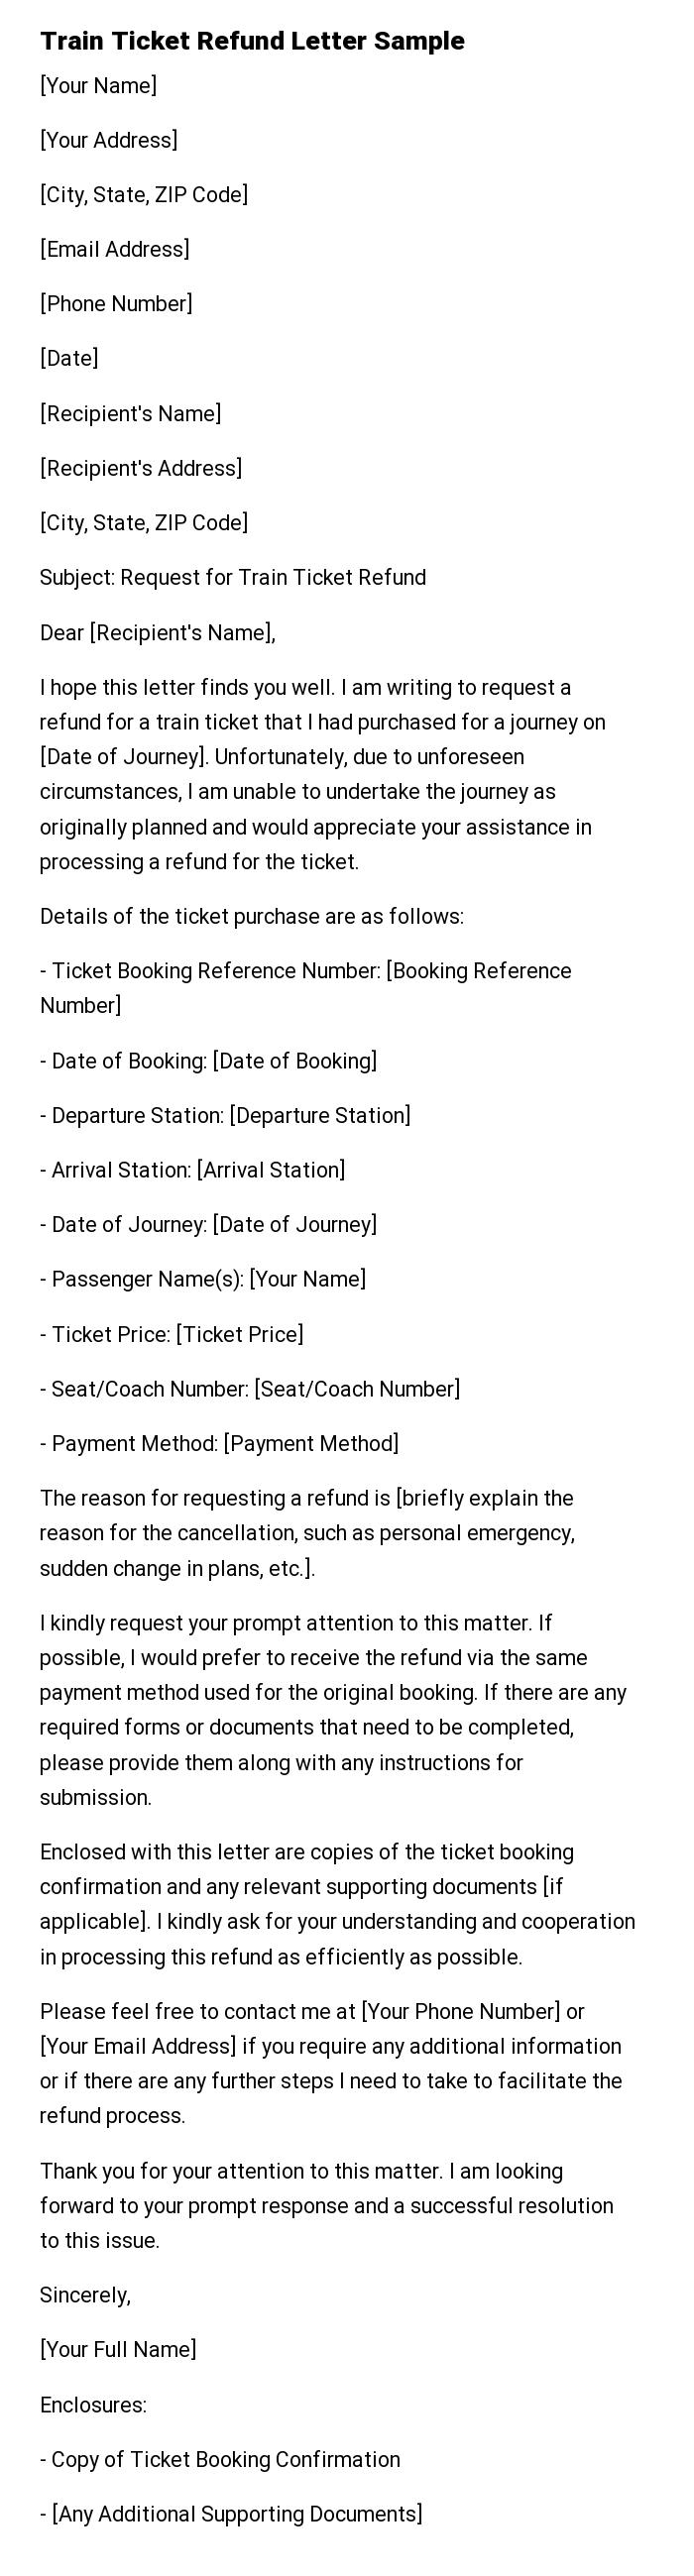 Train Ticket Refund Letter Sample